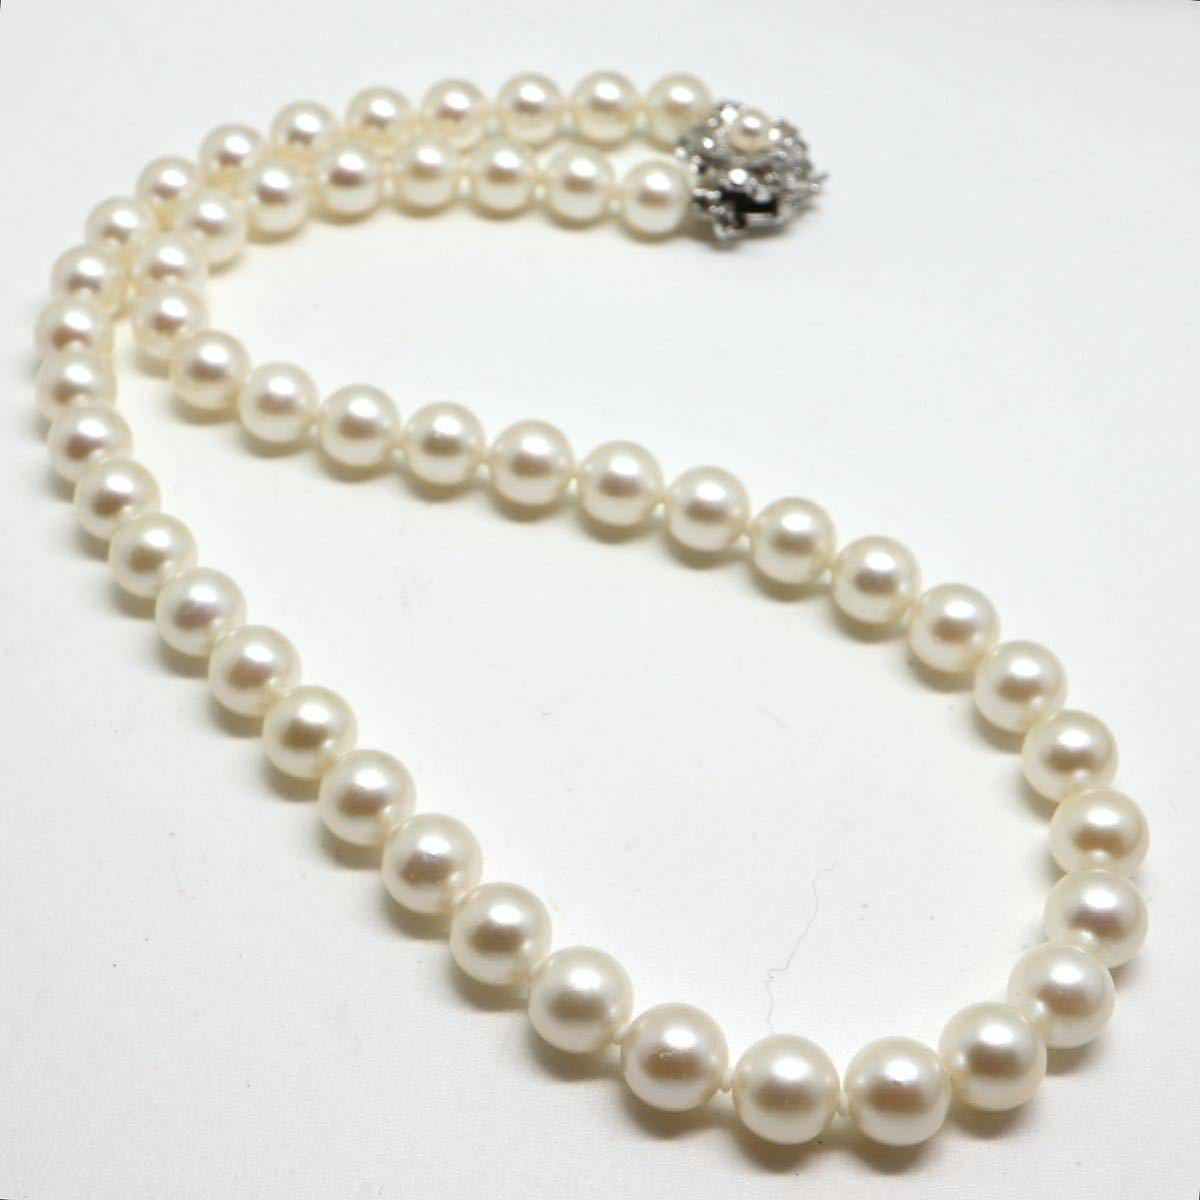 ソーティング付き!!《アコヤ本真珠ネックレス》J 7.5-8.0mm珠 36.7g 45cm pearl necklace ジュエリー jewelry EA3/EC6_画像6